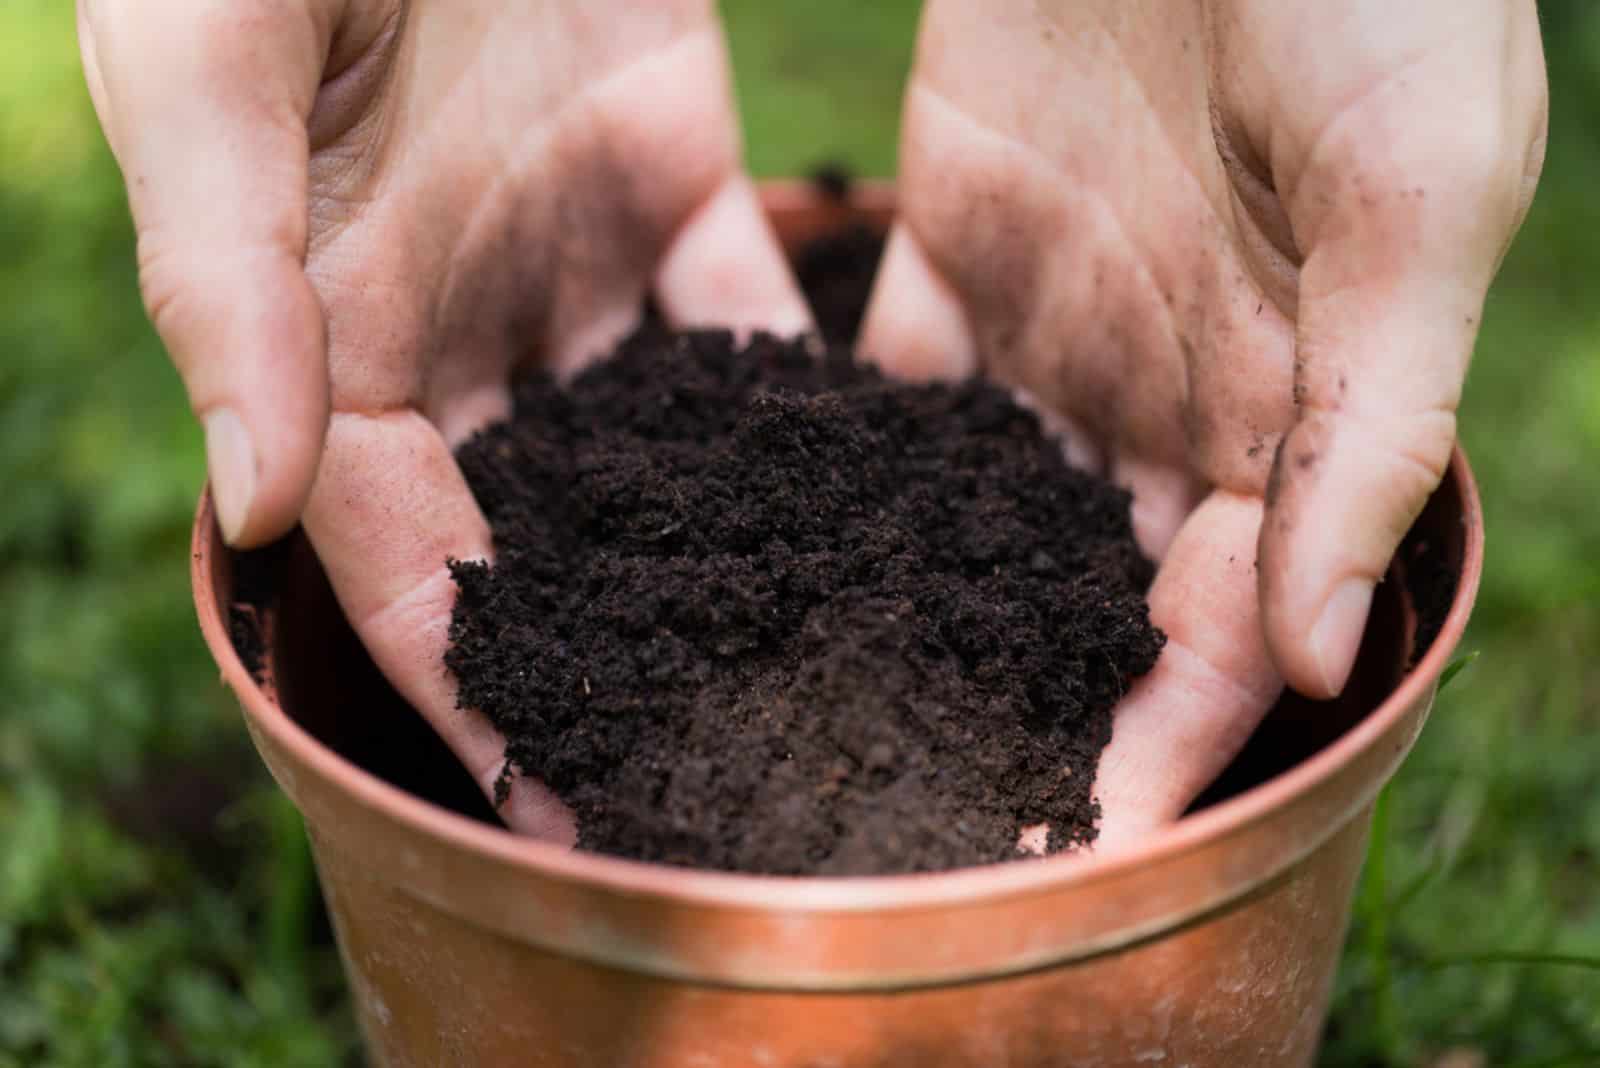 woman putting soil into a pot